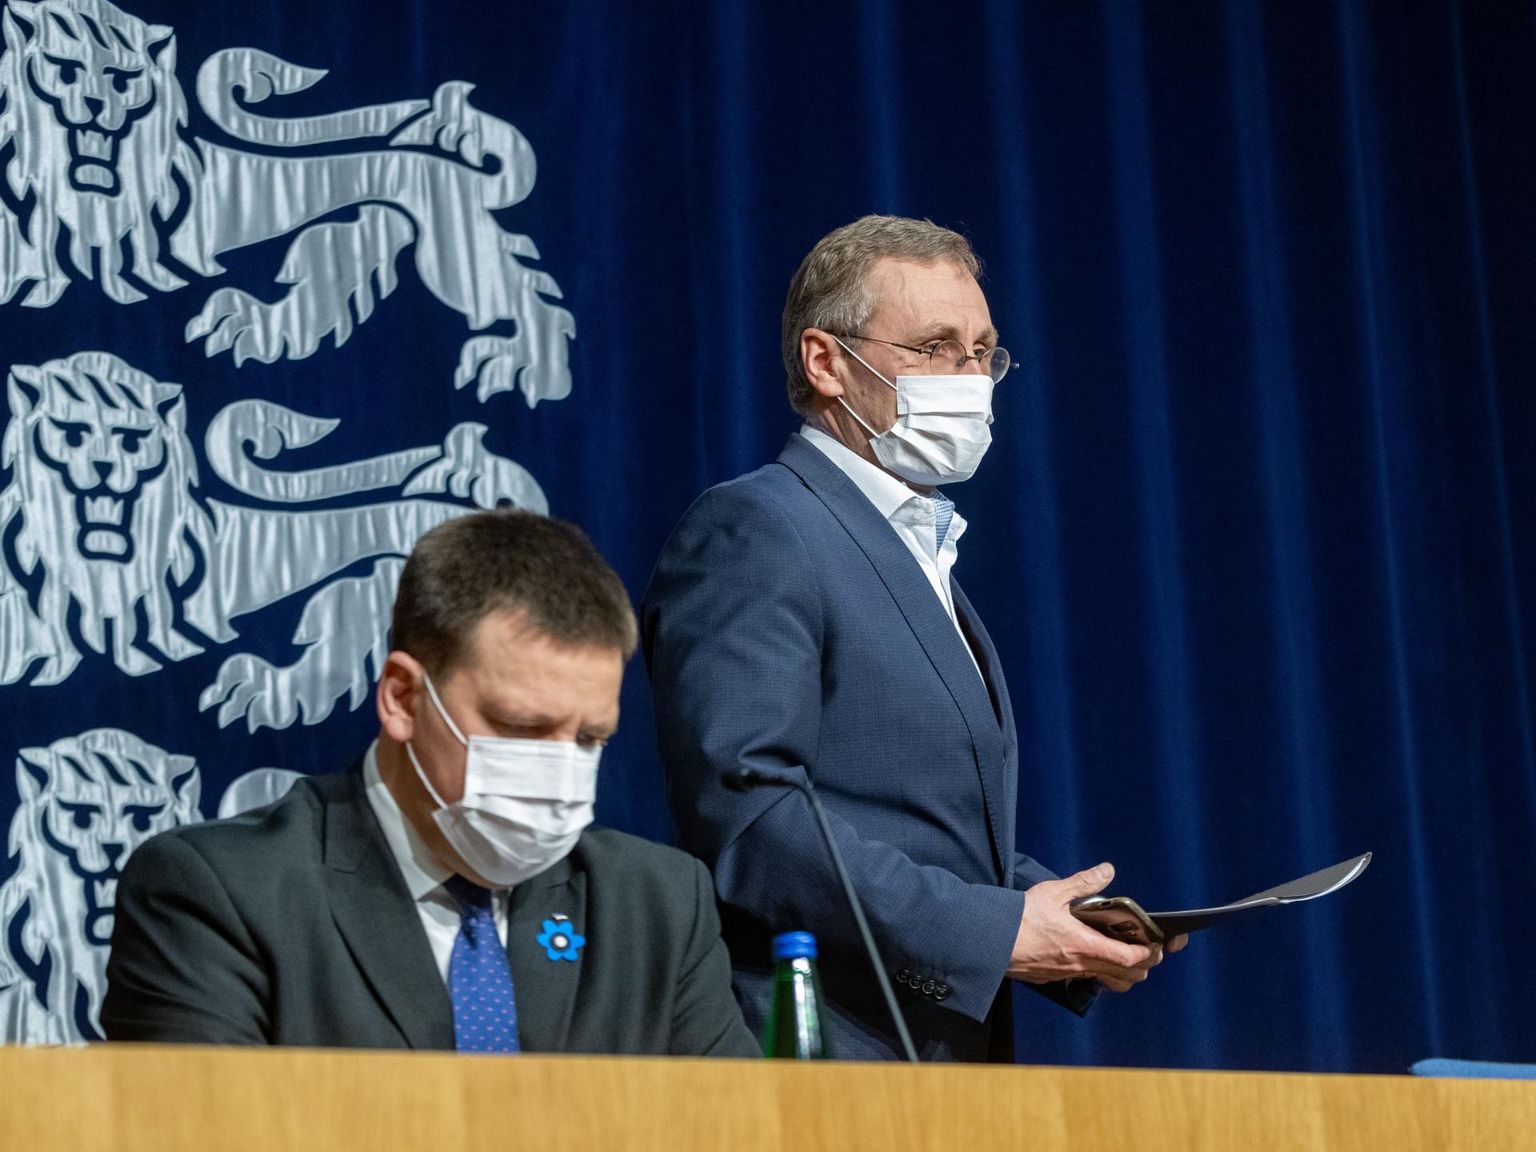 Maskides ministrid: Jüri Ratas, Tõnis Lukas. Tallinn, 23.04.2020